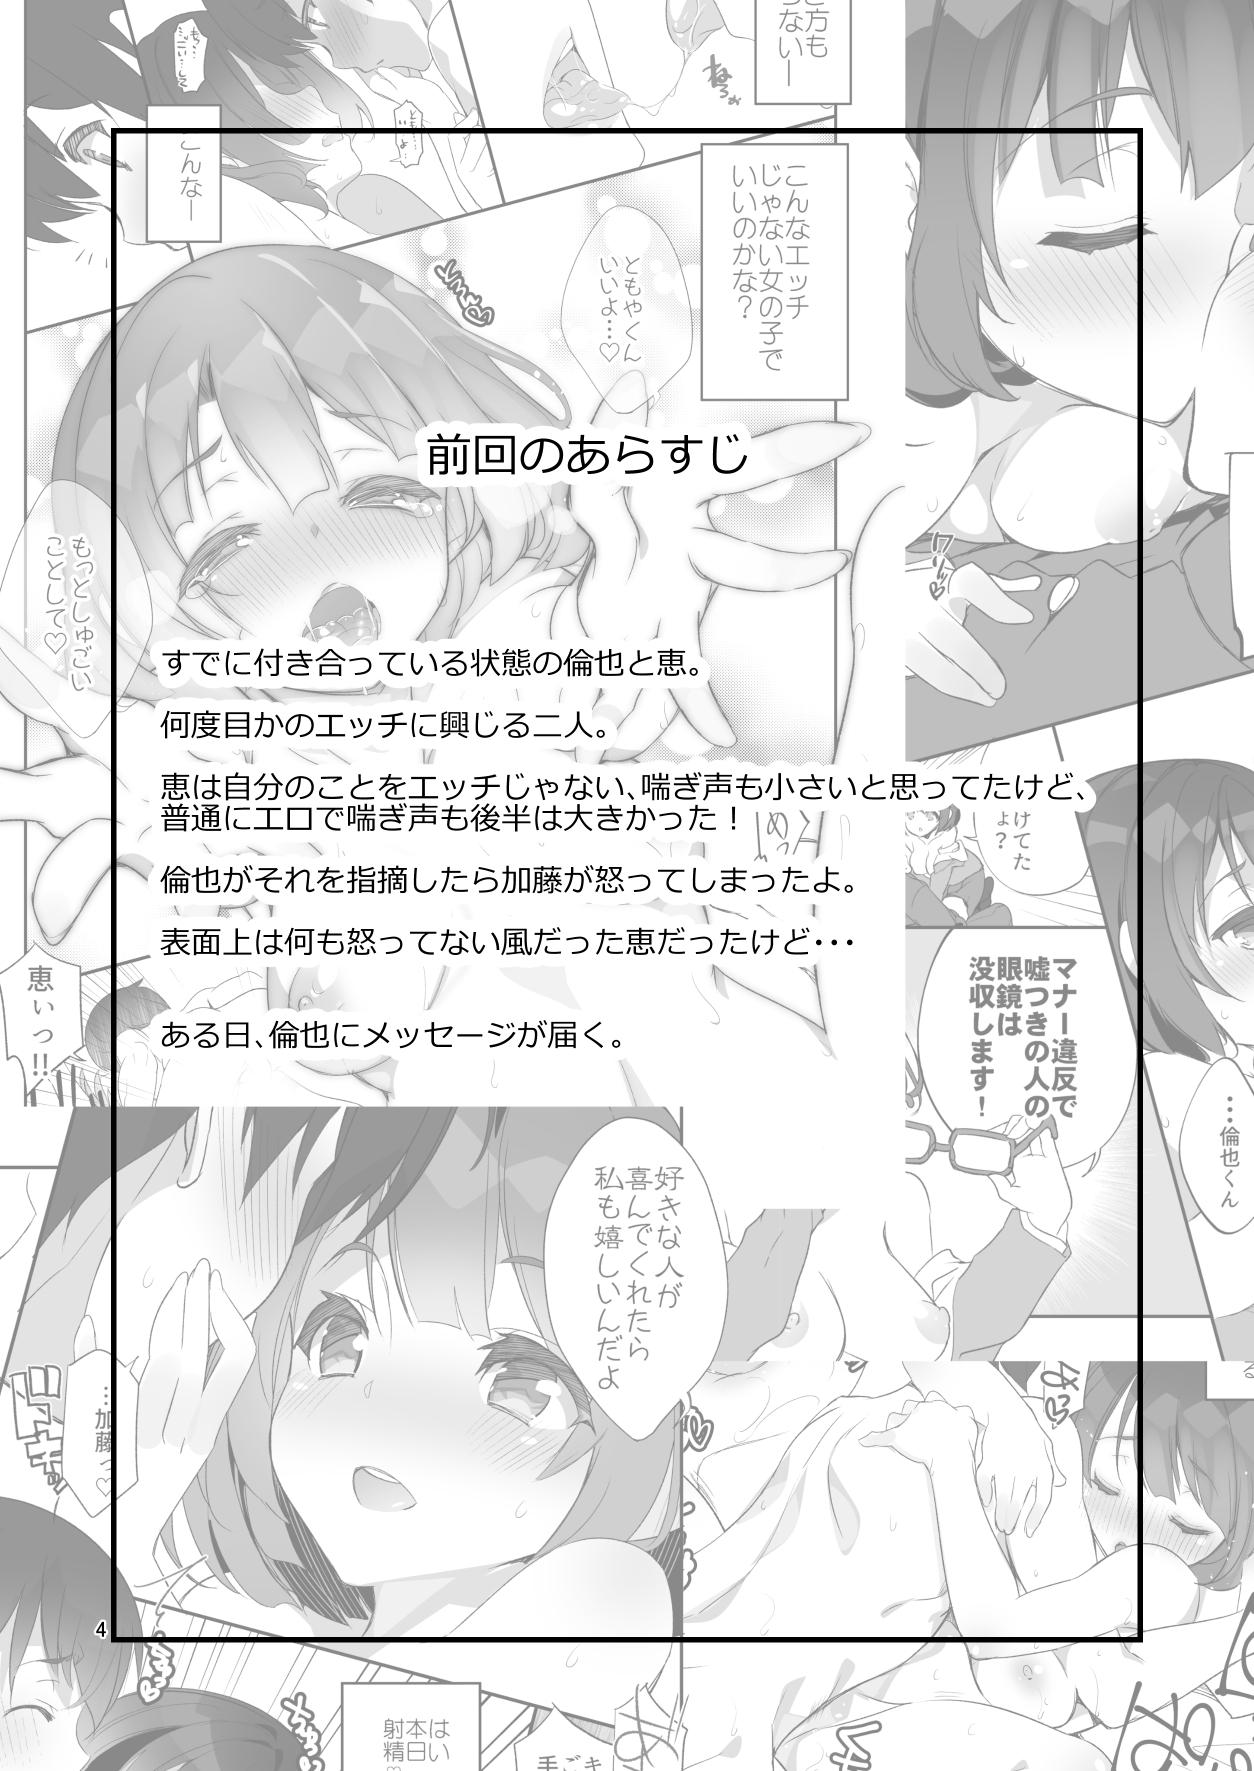 Ass Licking Futsukano wa Wotakare no Megane o Toru. 2 - Saenai heroine no sodatekata Moreno - Page 4